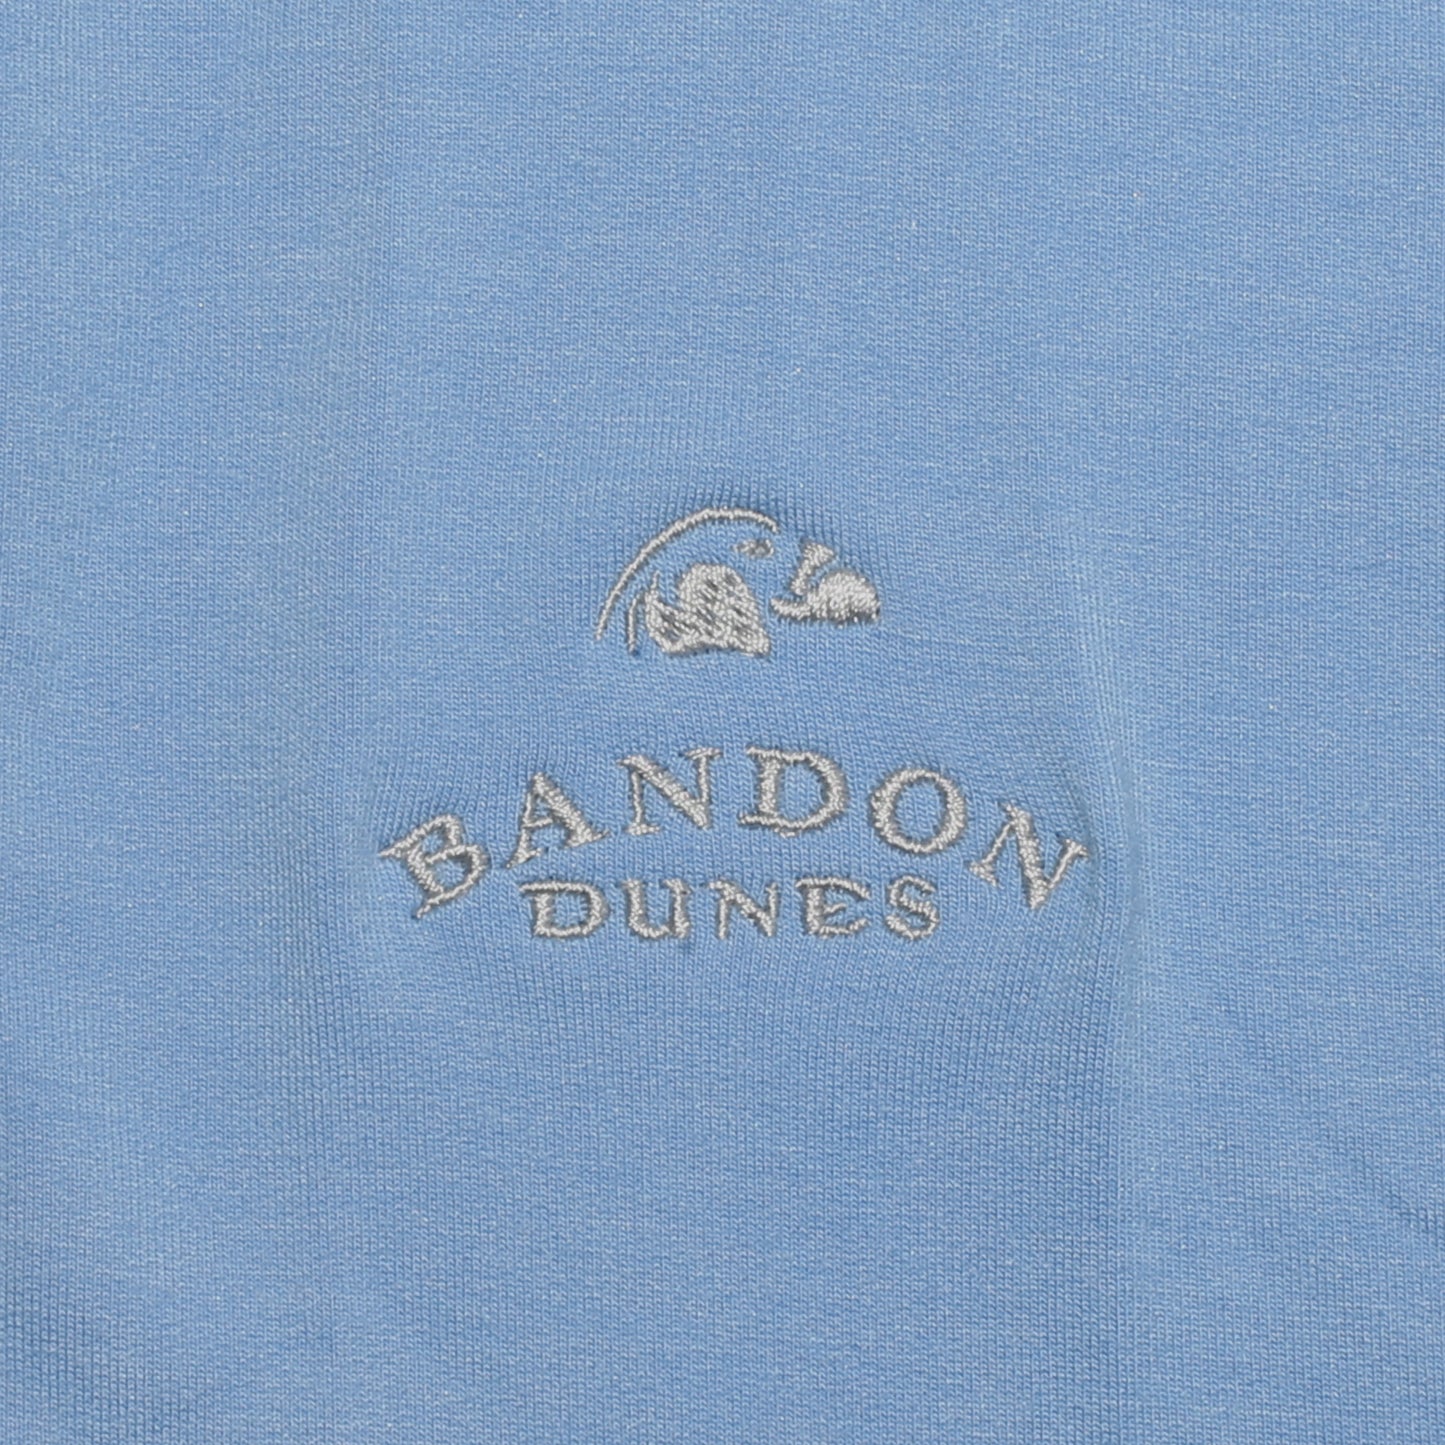 Ladies Color Block Hoodie - Bandon Dunes